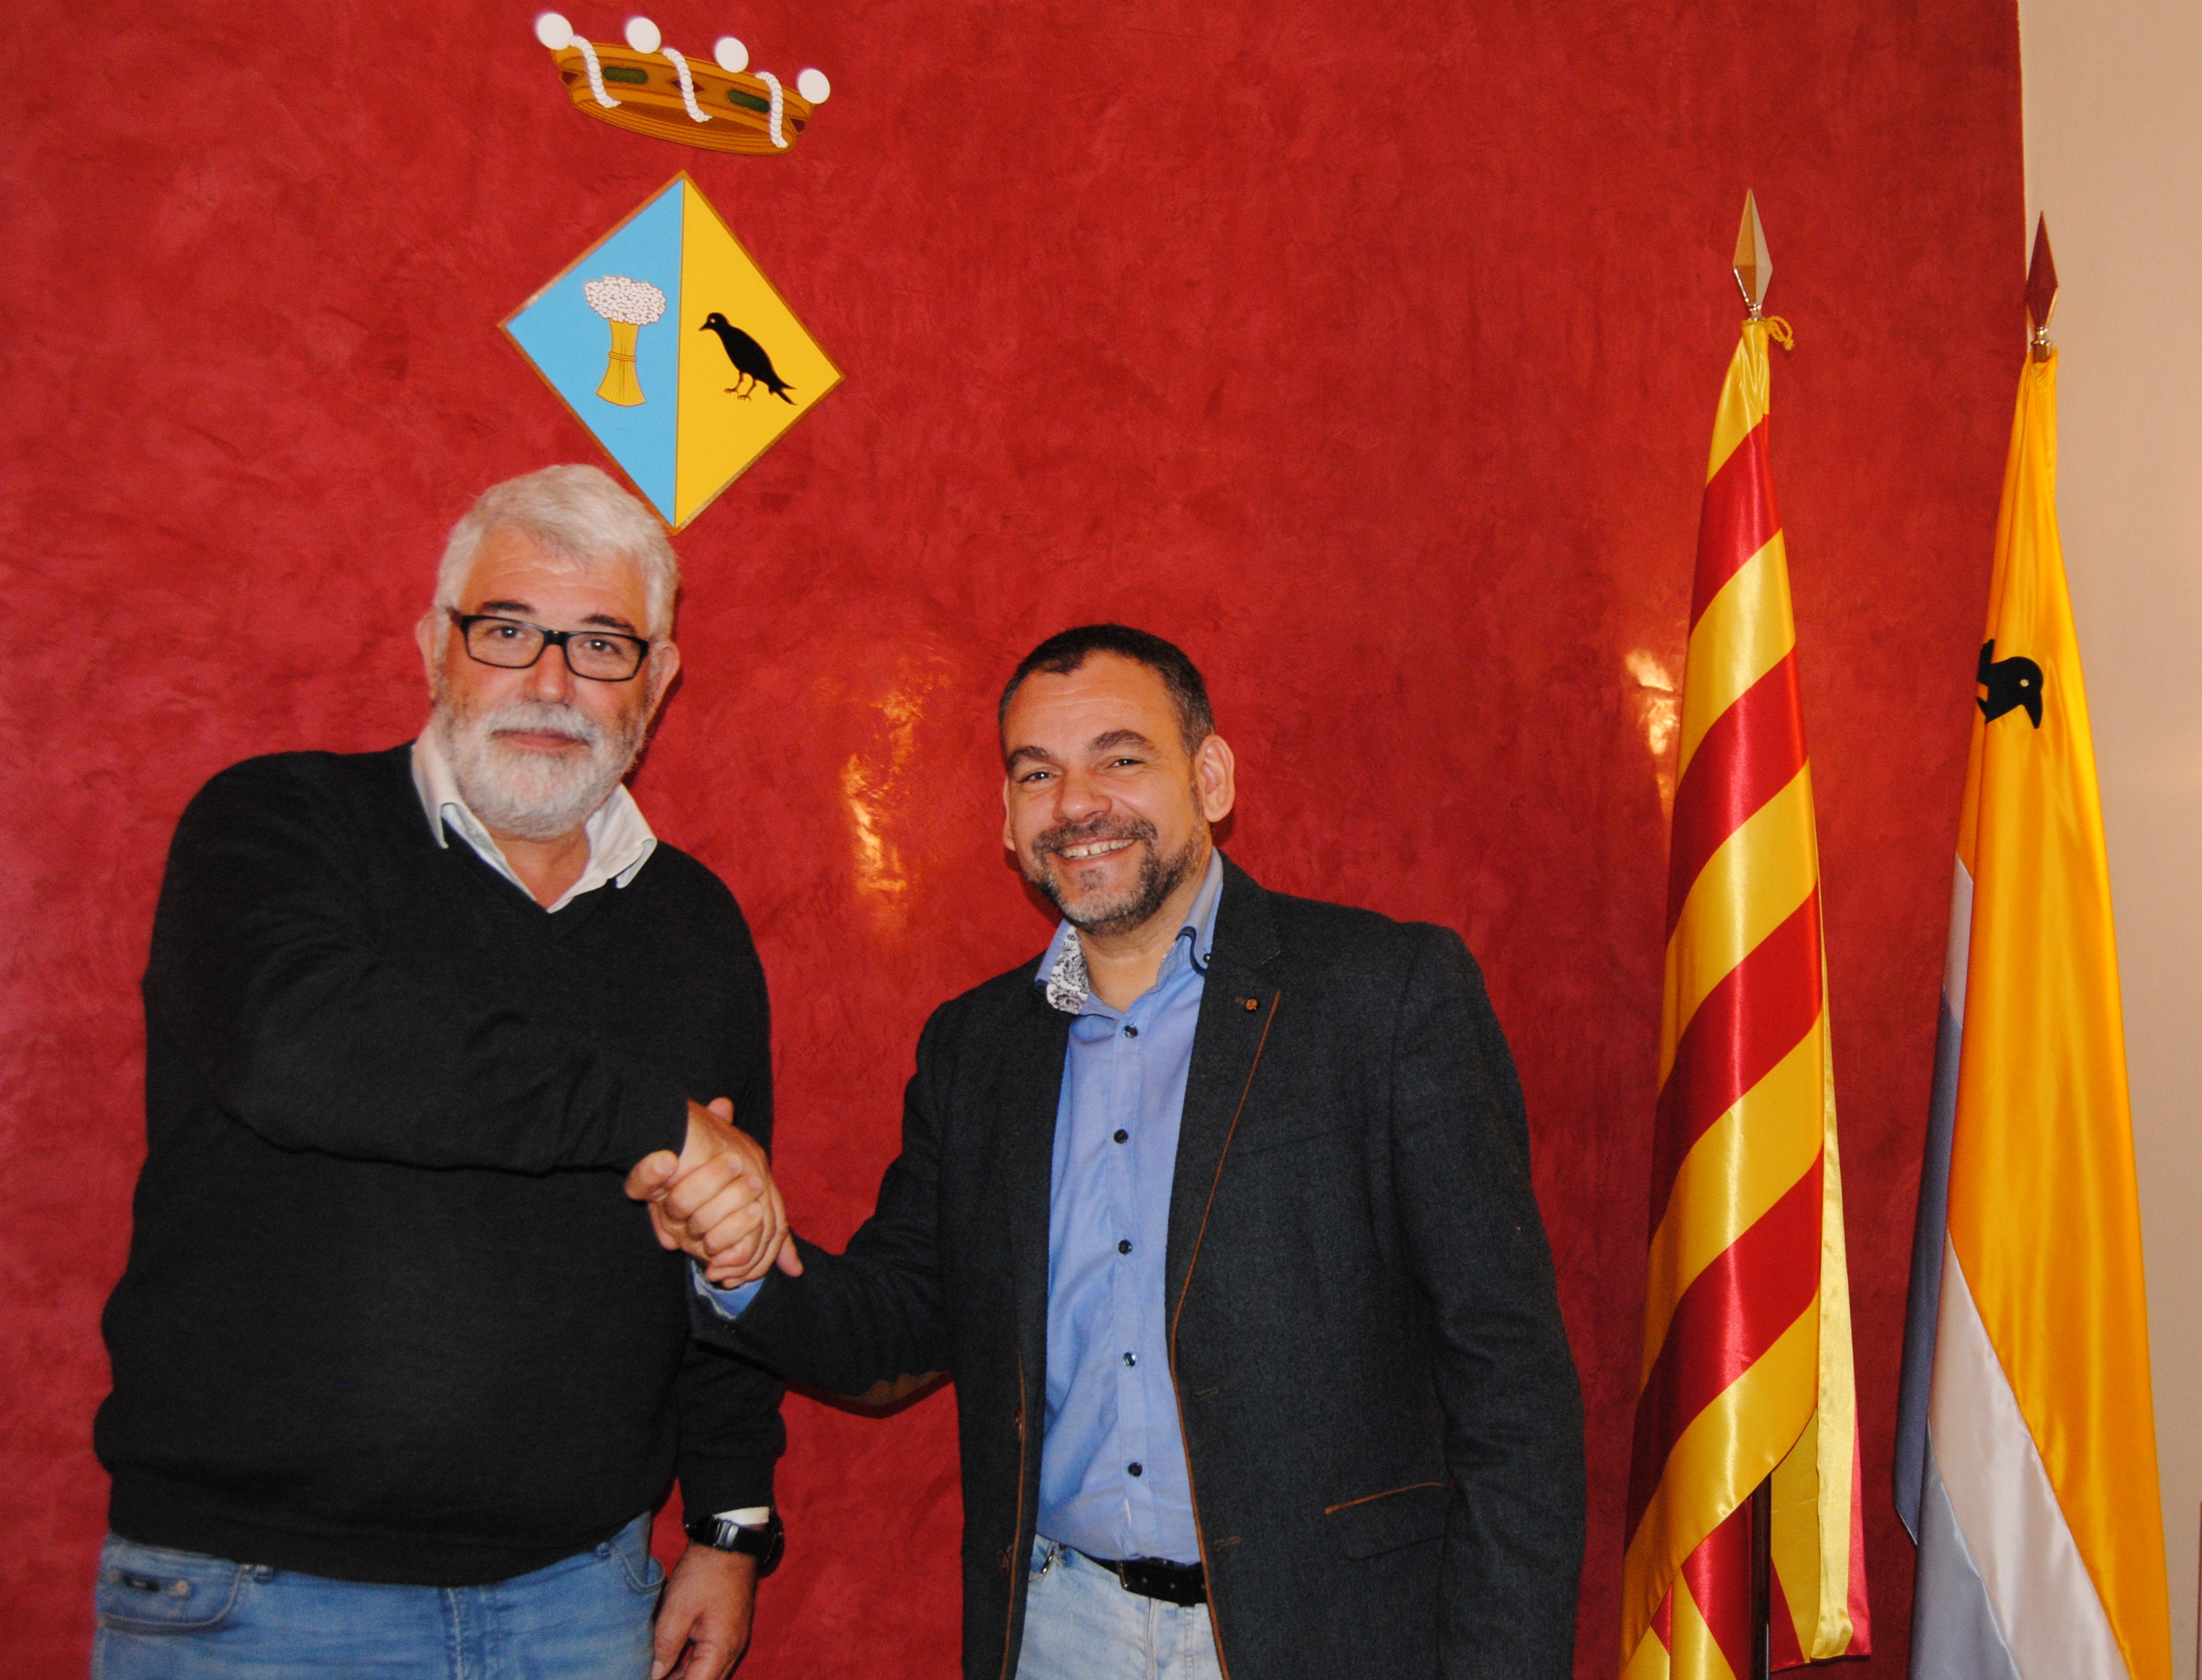 L'alcalde Martí Pujol i el regidor Joan Ramon, del PSC